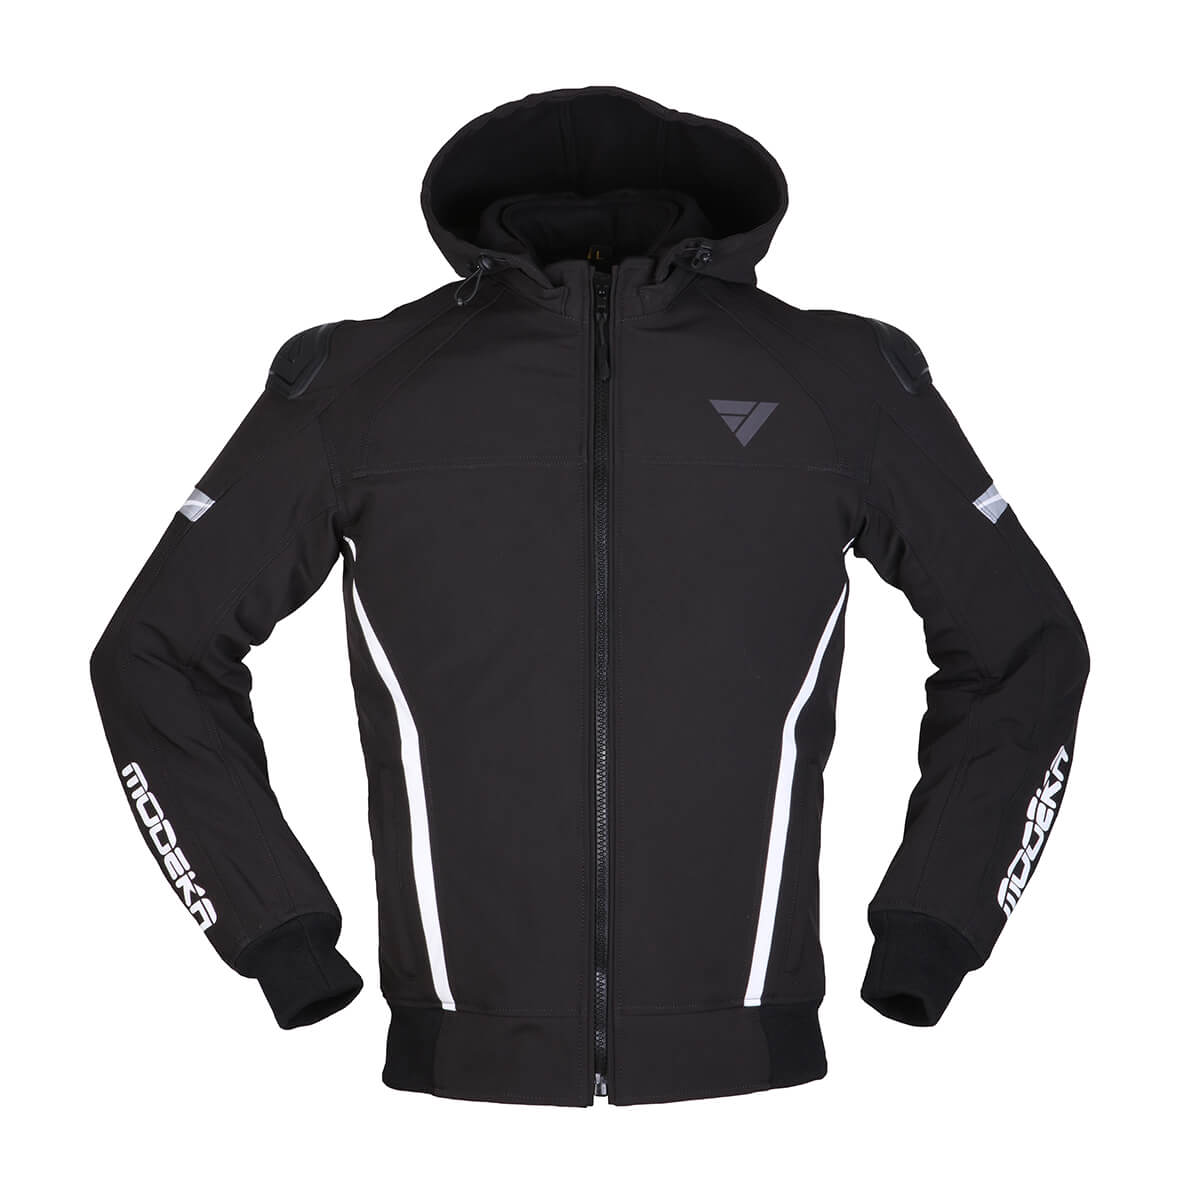 Image of Modeka Clarke Sport Jacket Black White Size S ID 4045765189474